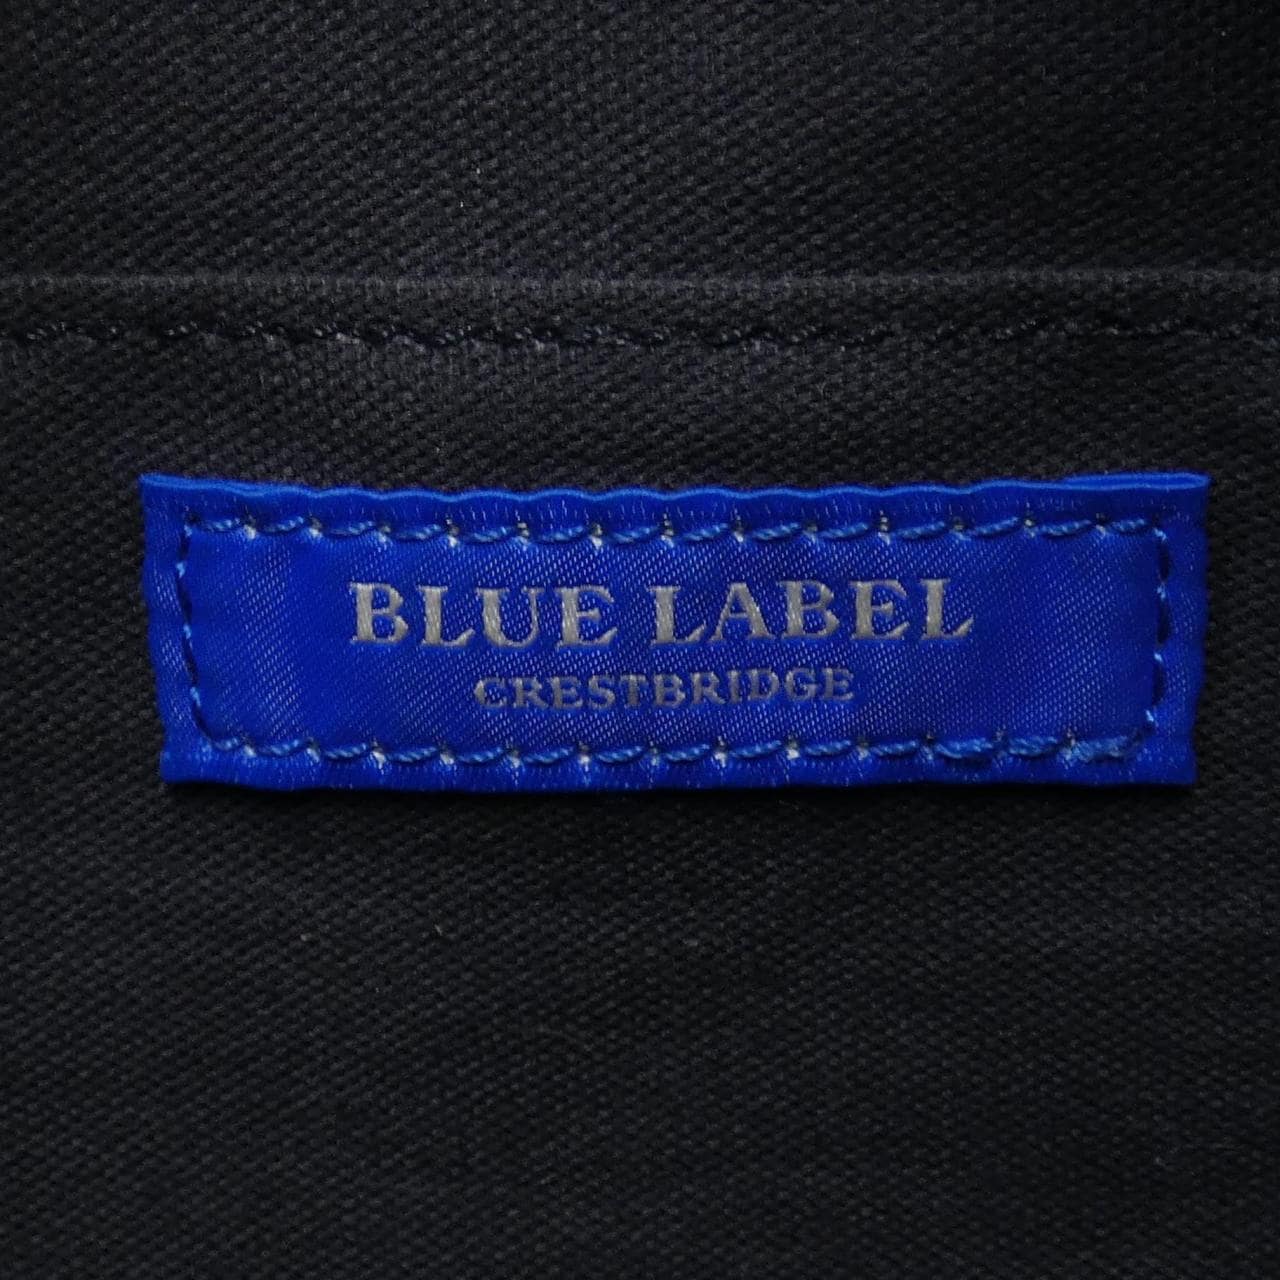 ブルーレーベルクレストブリッジ BLUE LABEL CRESTBRID BAG